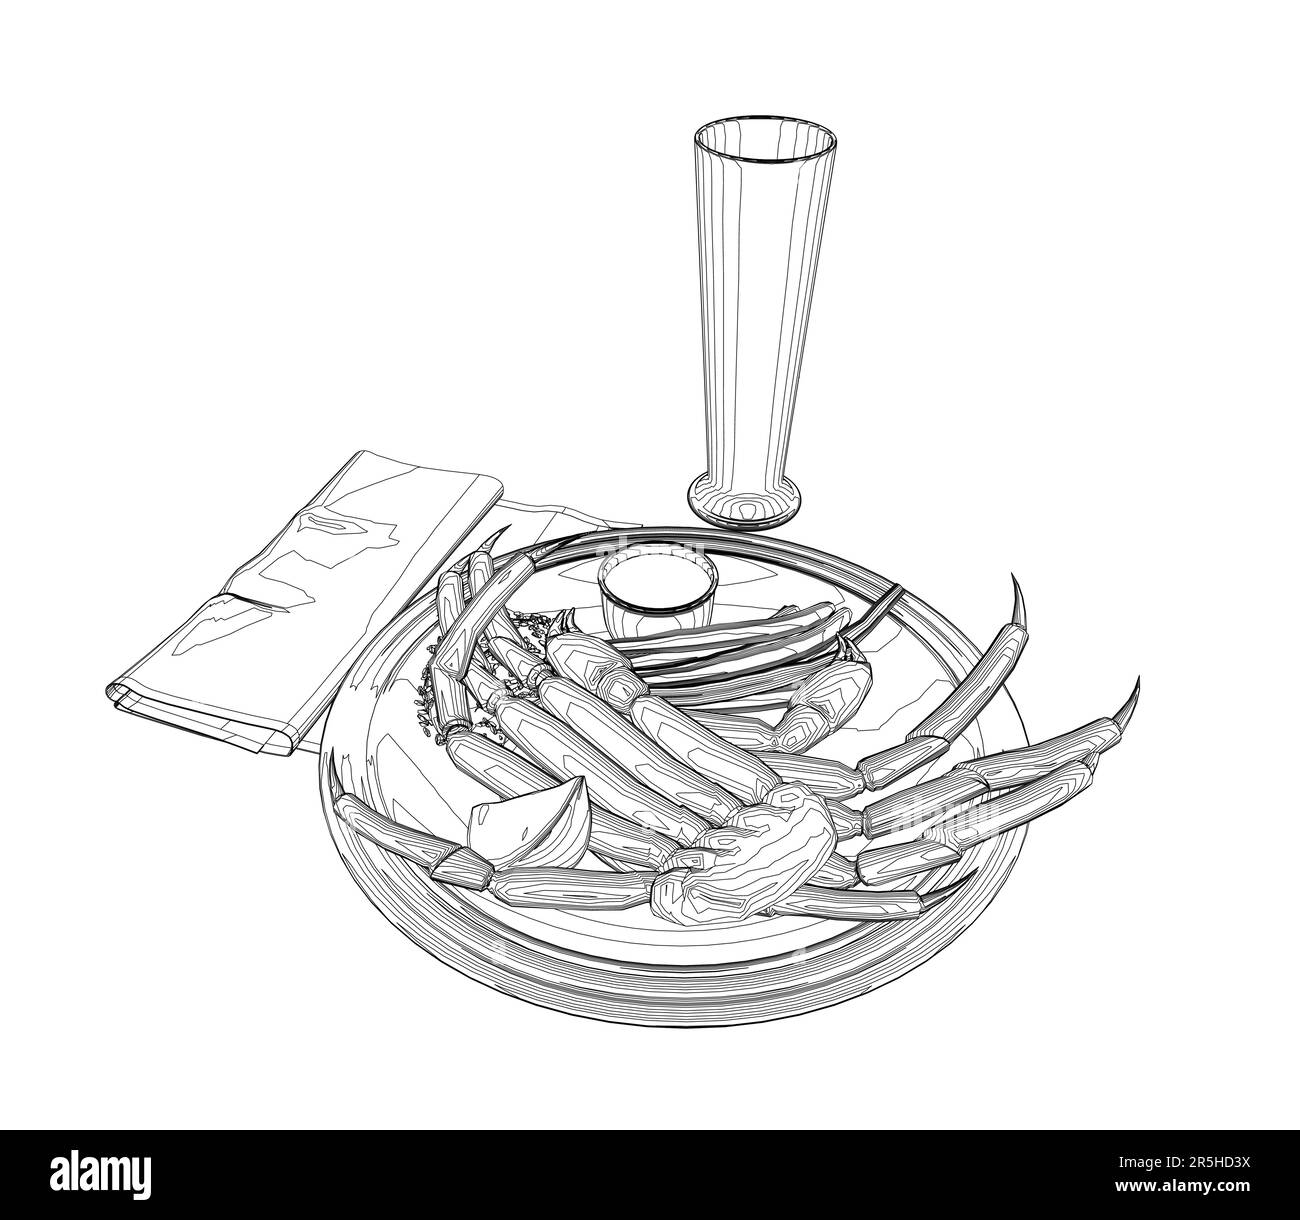 Contorno di un piatto con granchio su un piatto, un tovagliolo e un bicchiere dalle linee nere isolato su uno sfondo bianco. Vista isometrica. Illustrazione vettoriale. Illustrazione Vettoriale